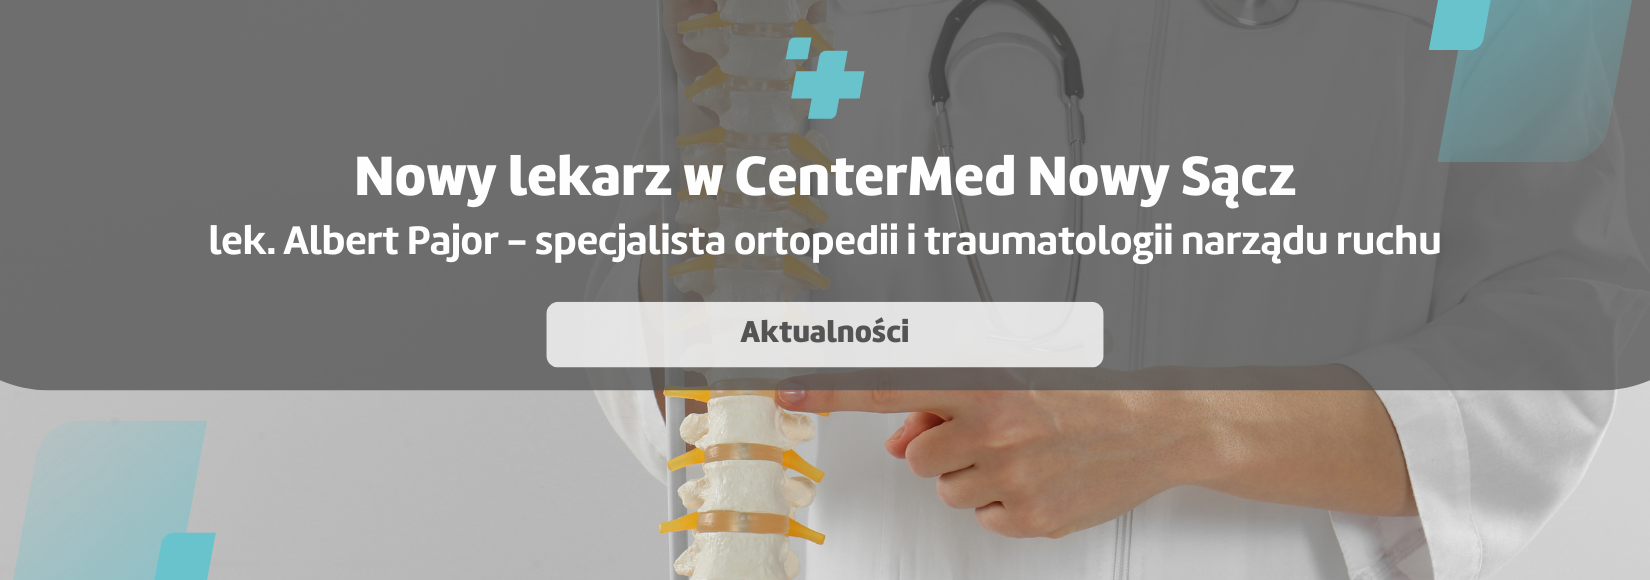 Nowy specjalista - Nowy Sącz - lek. Albert Pajor - spec. ortopedii i traumatologii narządu ruchu